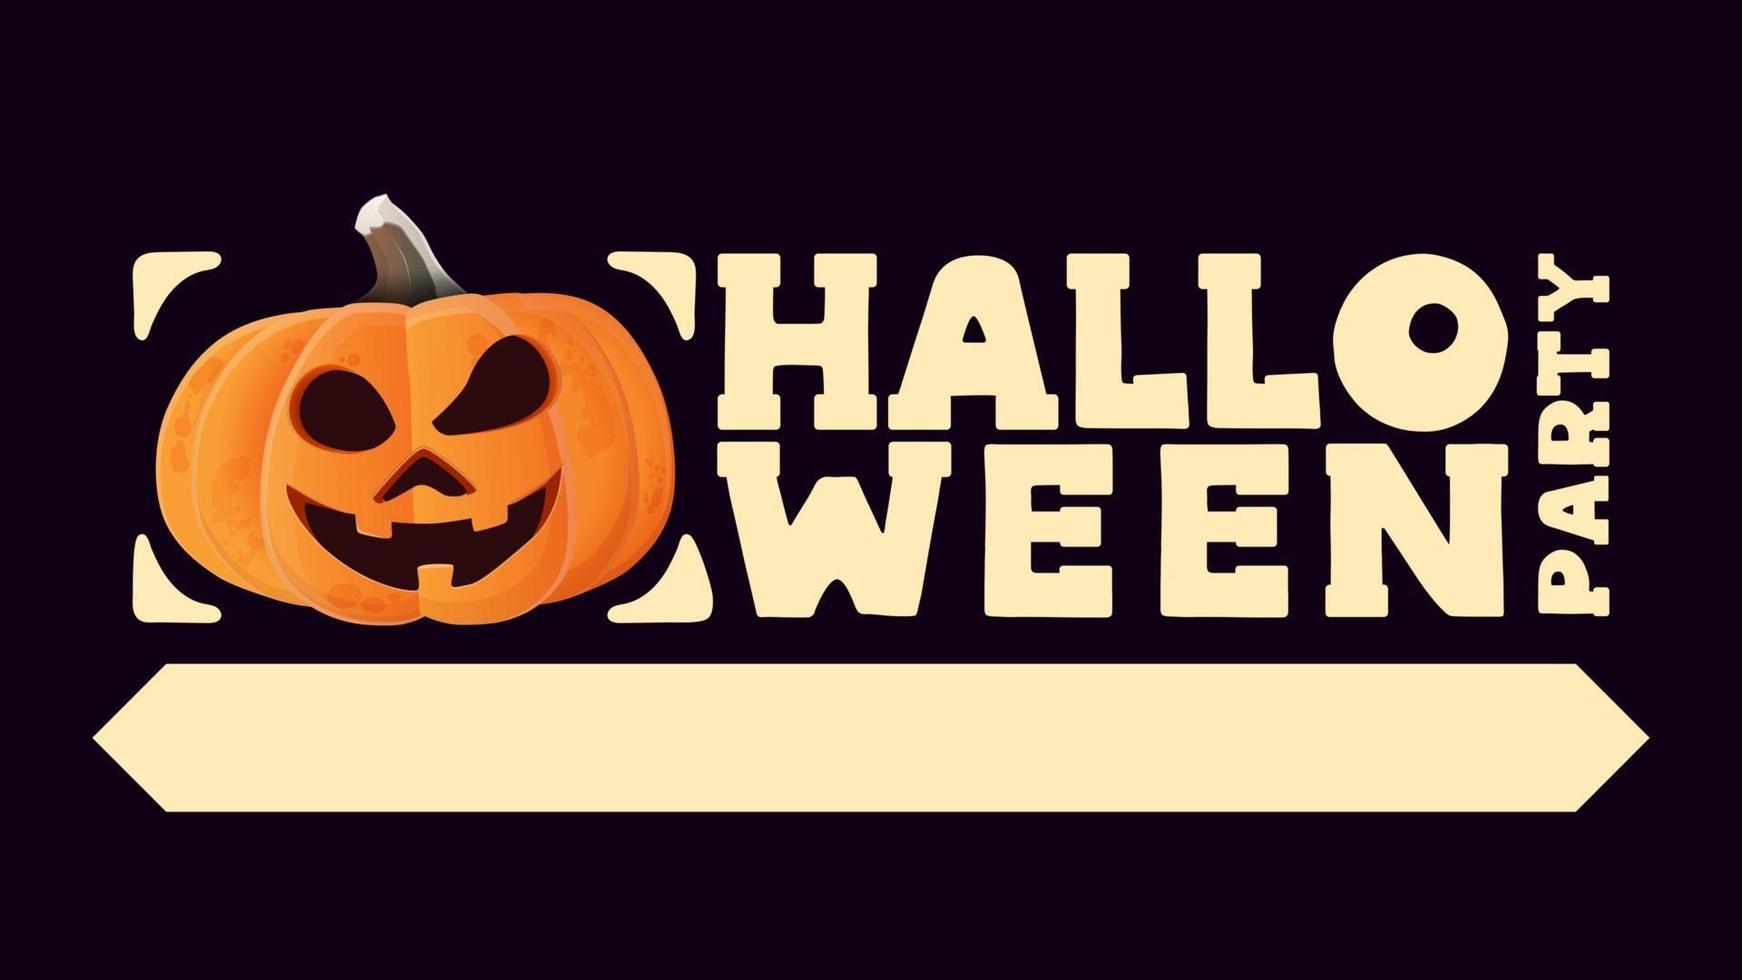 Halloween-Party, horizontales Poster im typografischen Stil mit Halloween-Kürbis vektor